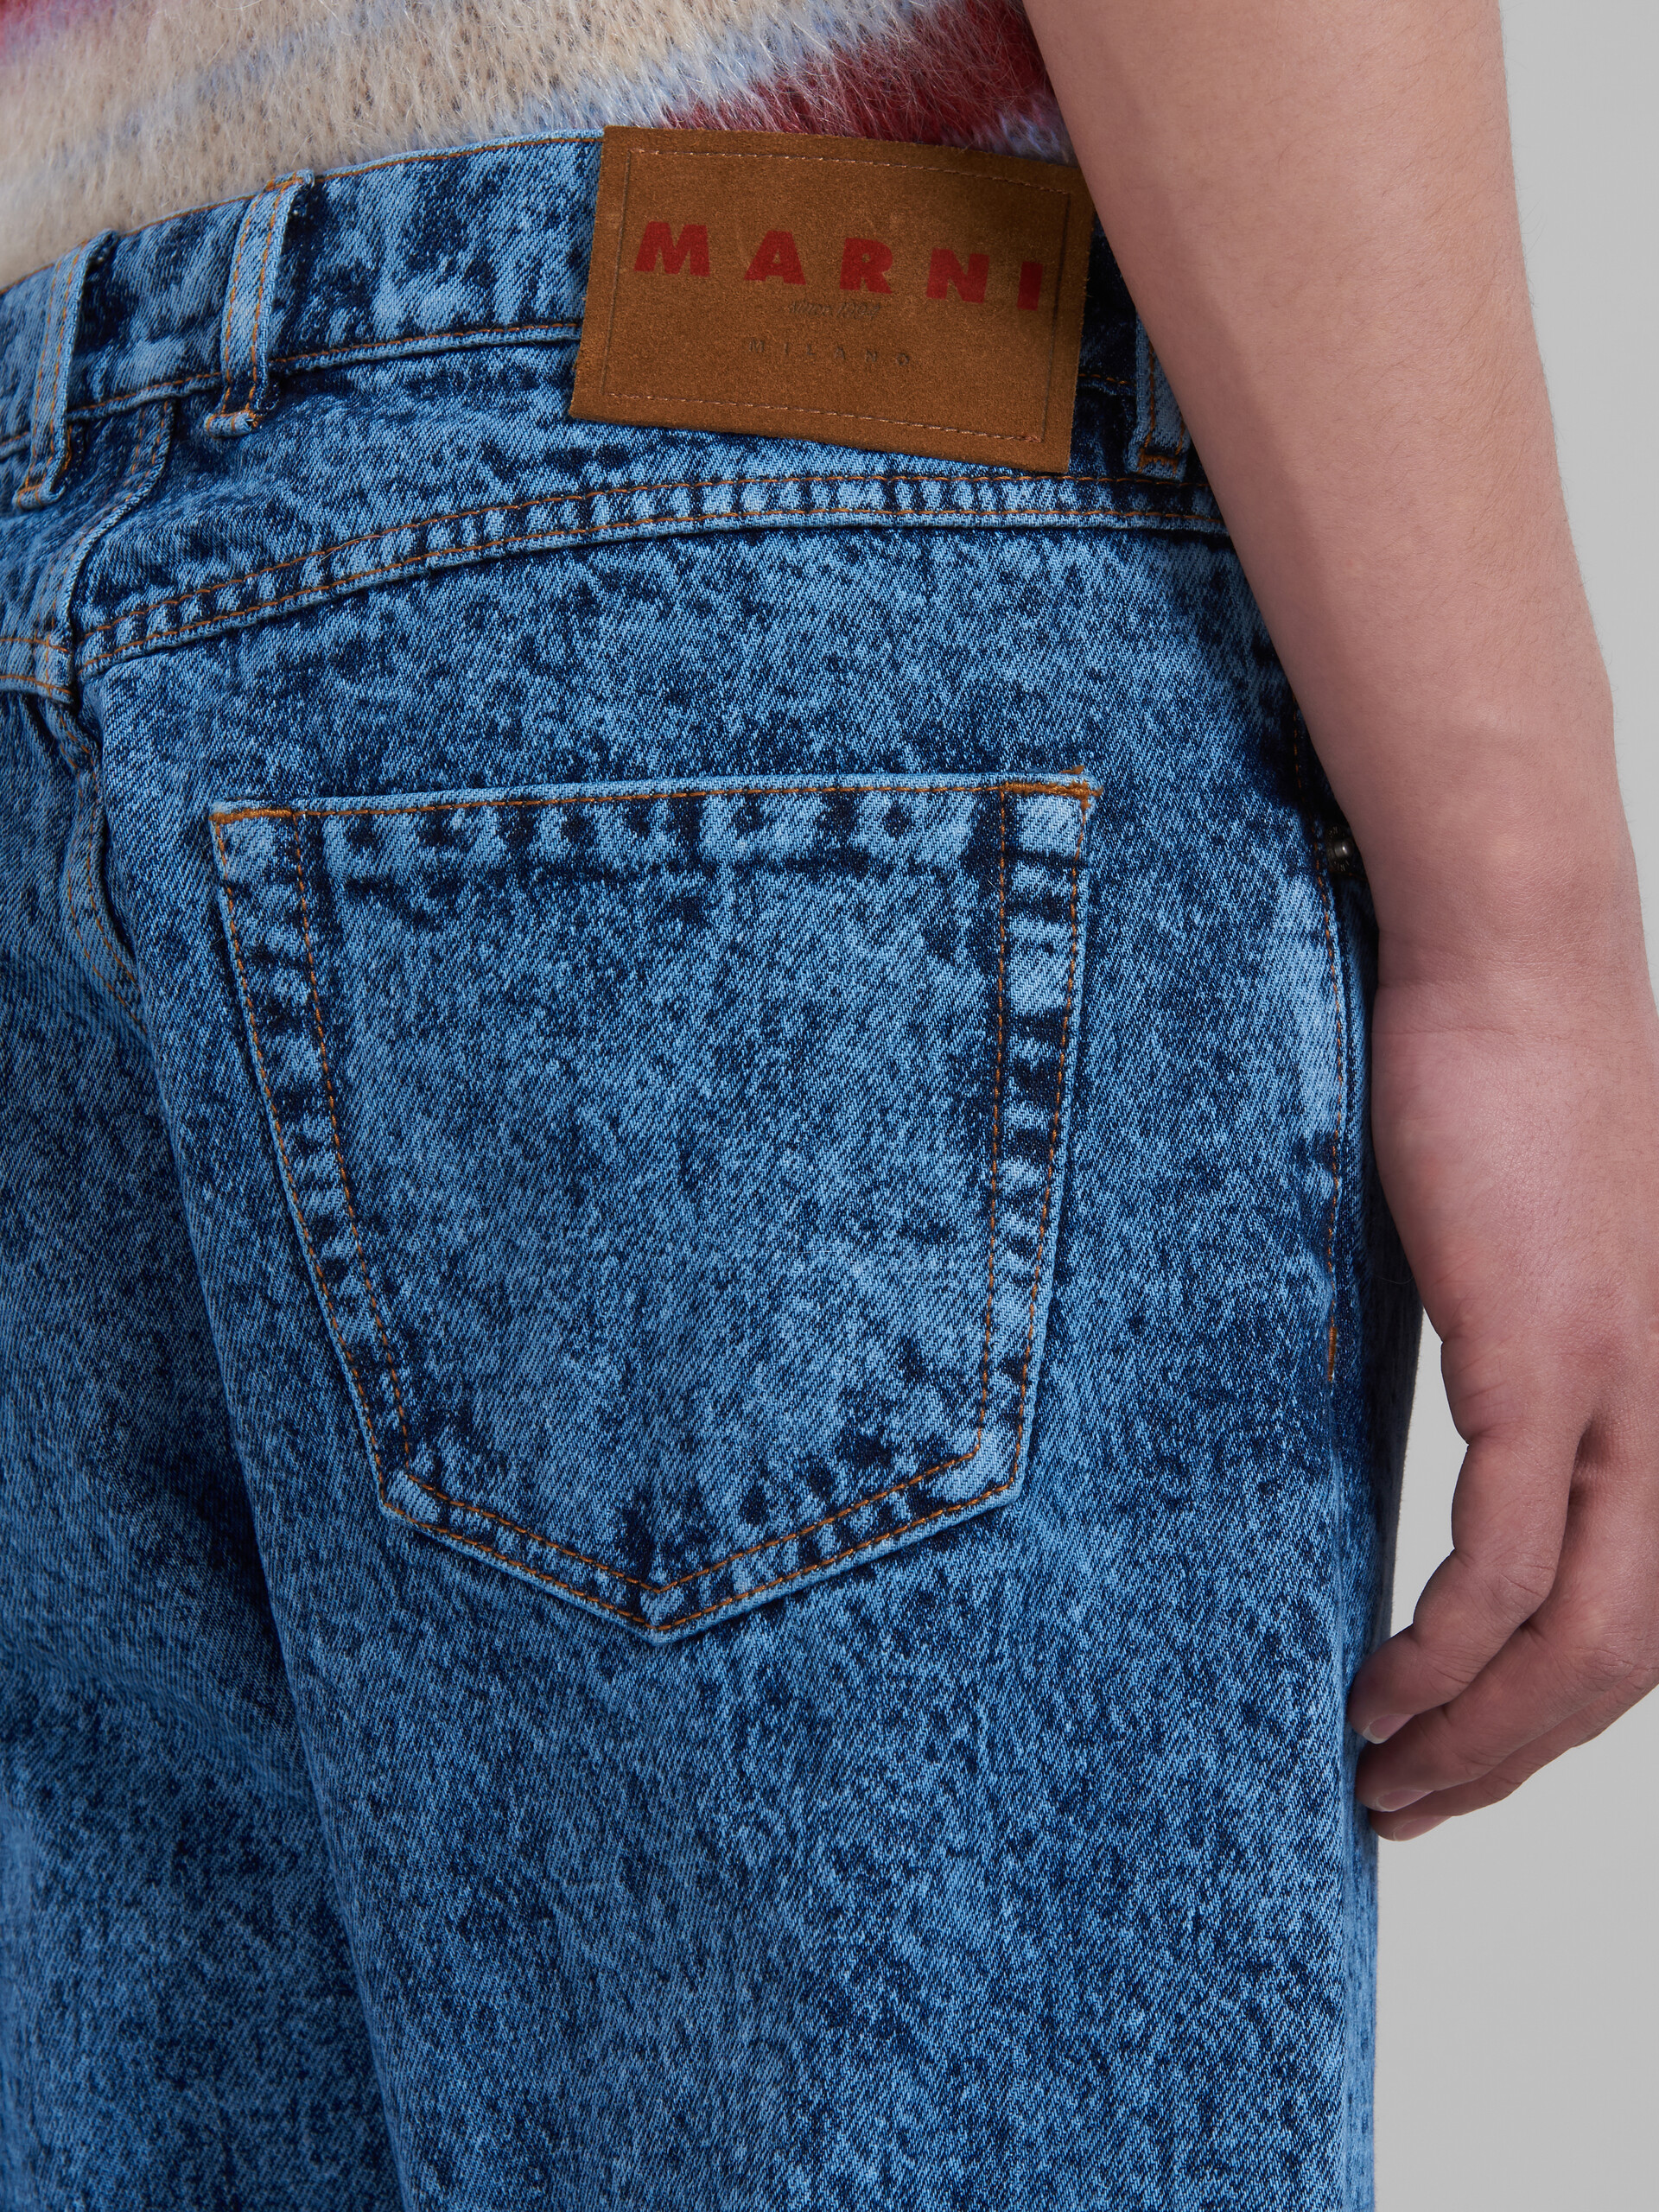 Blaue, gerade geschnittene Hose aus Baumwolldrillich mit marmoriertem Muster - Hosen - Image 4